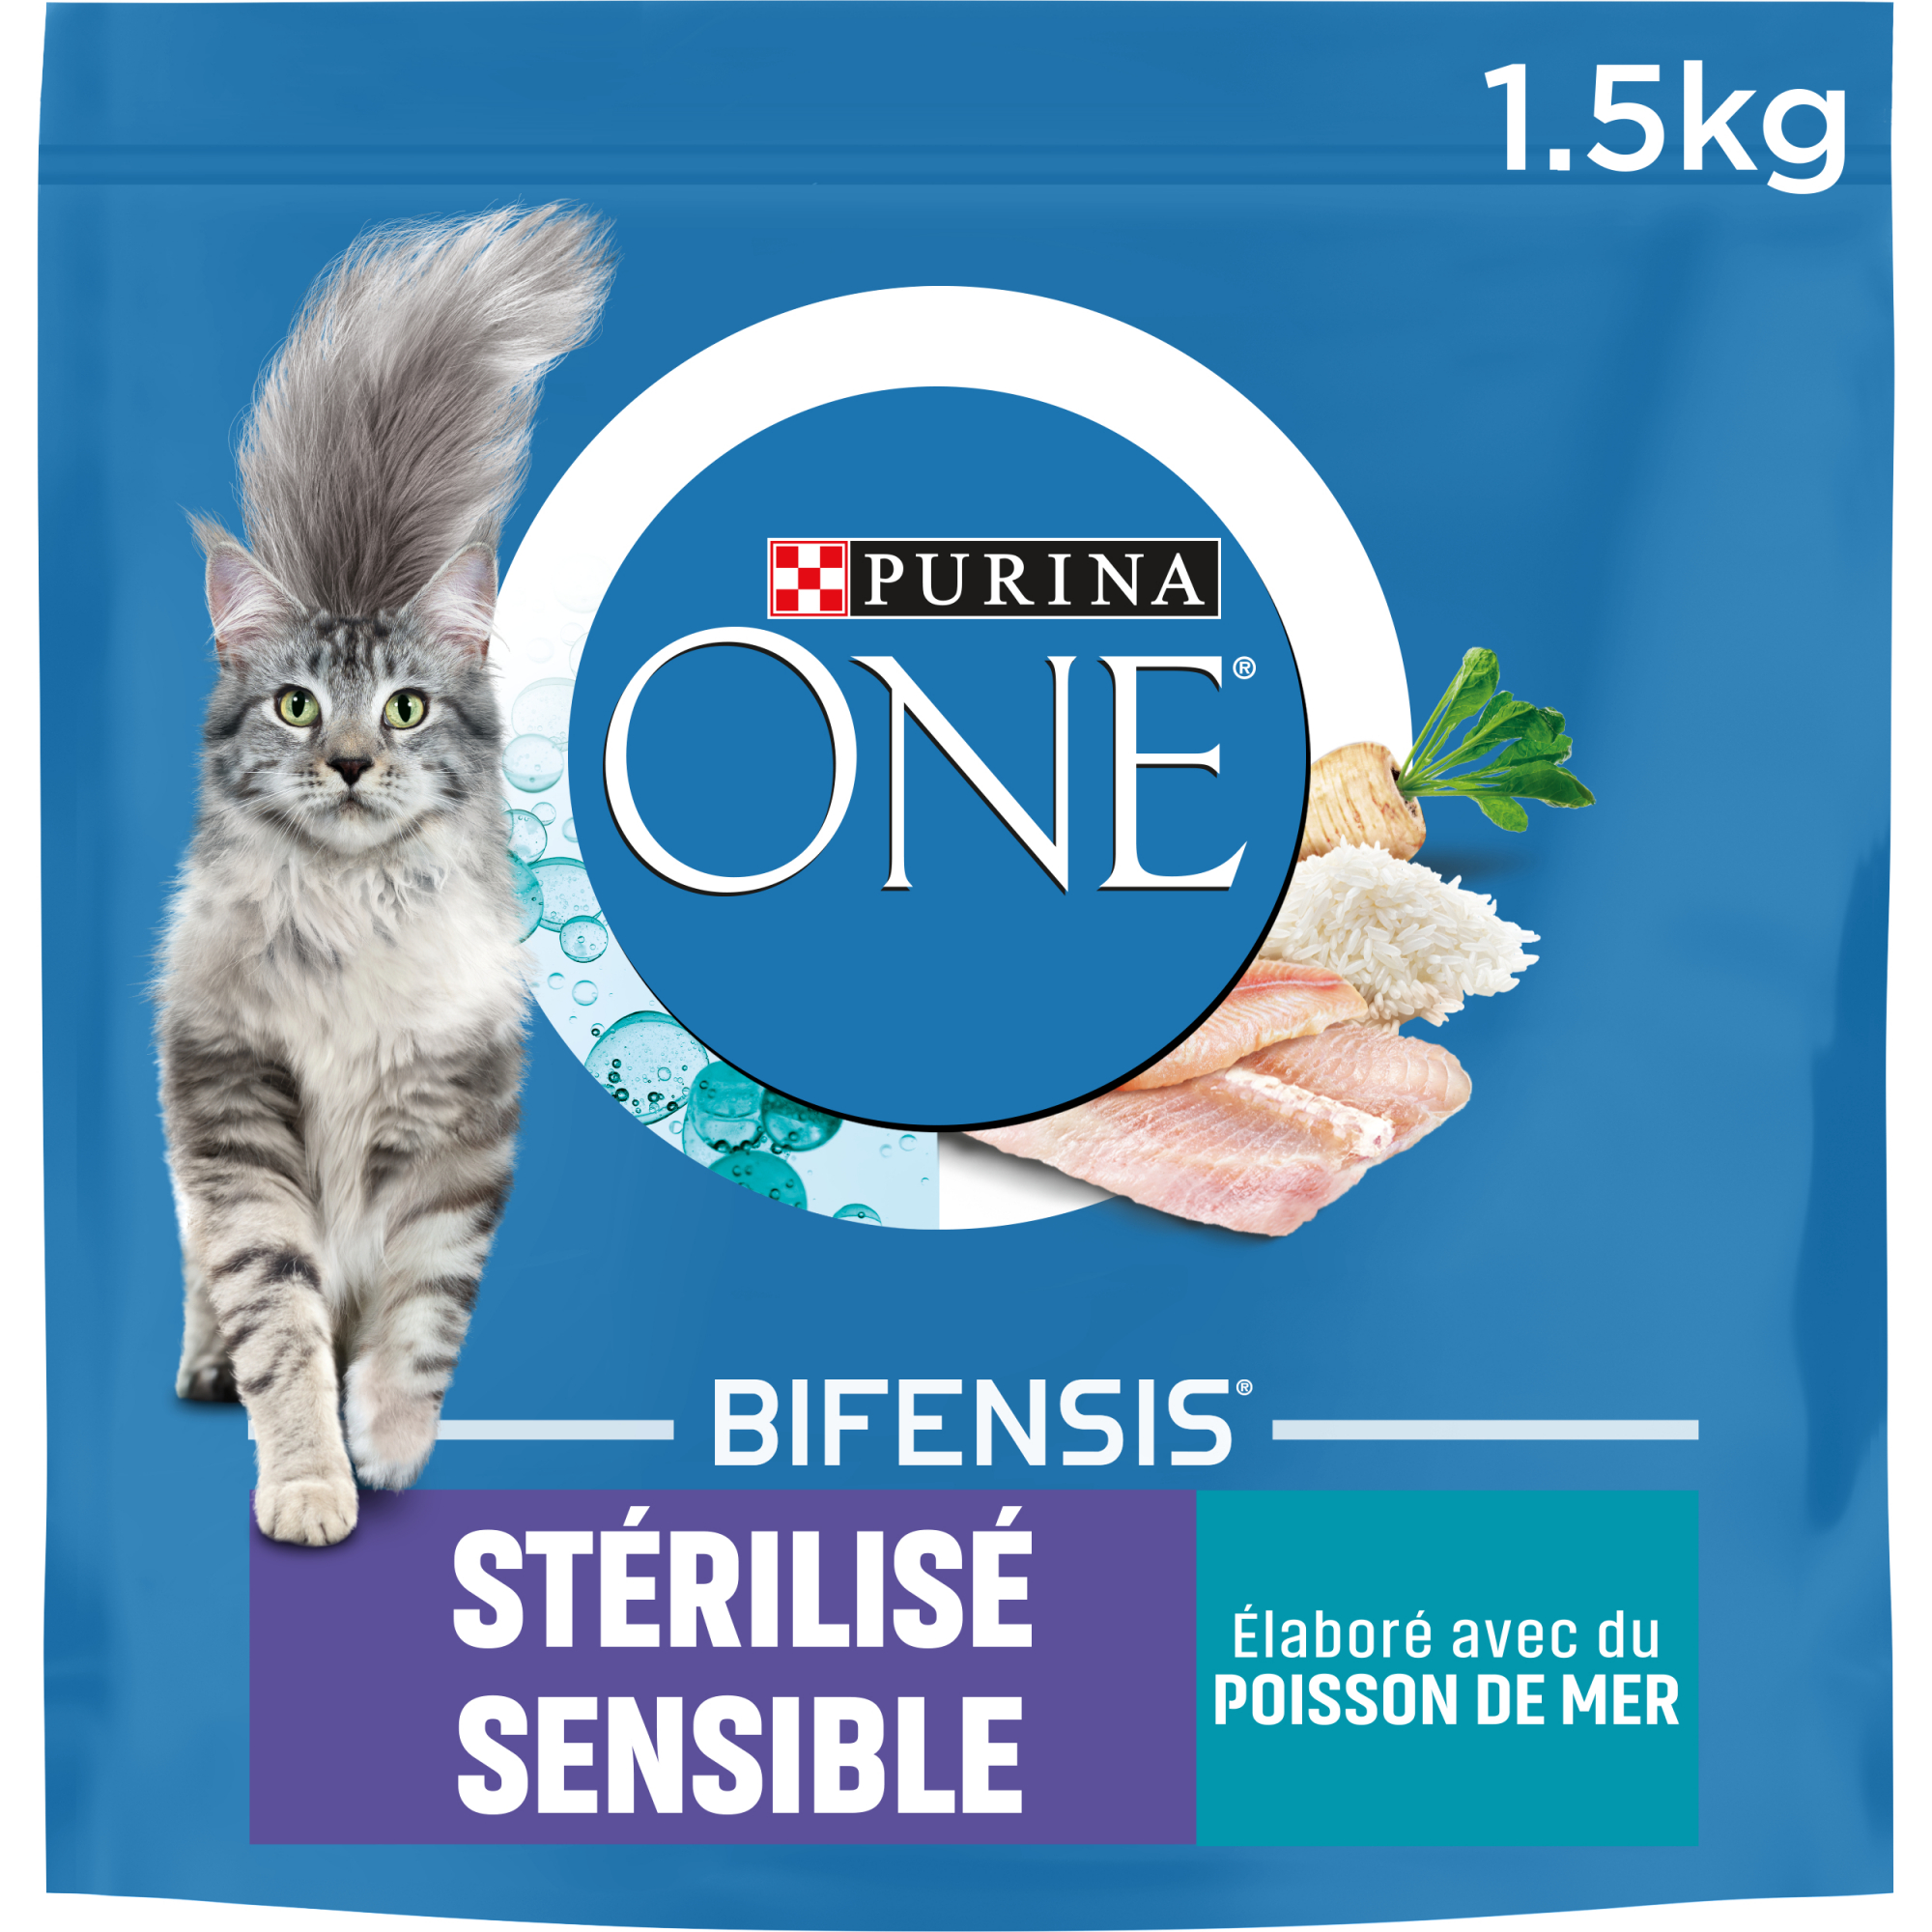 PURINA ONE Stérilisé Sensible au poissons céréales complètes pour chat stérilisé sensible